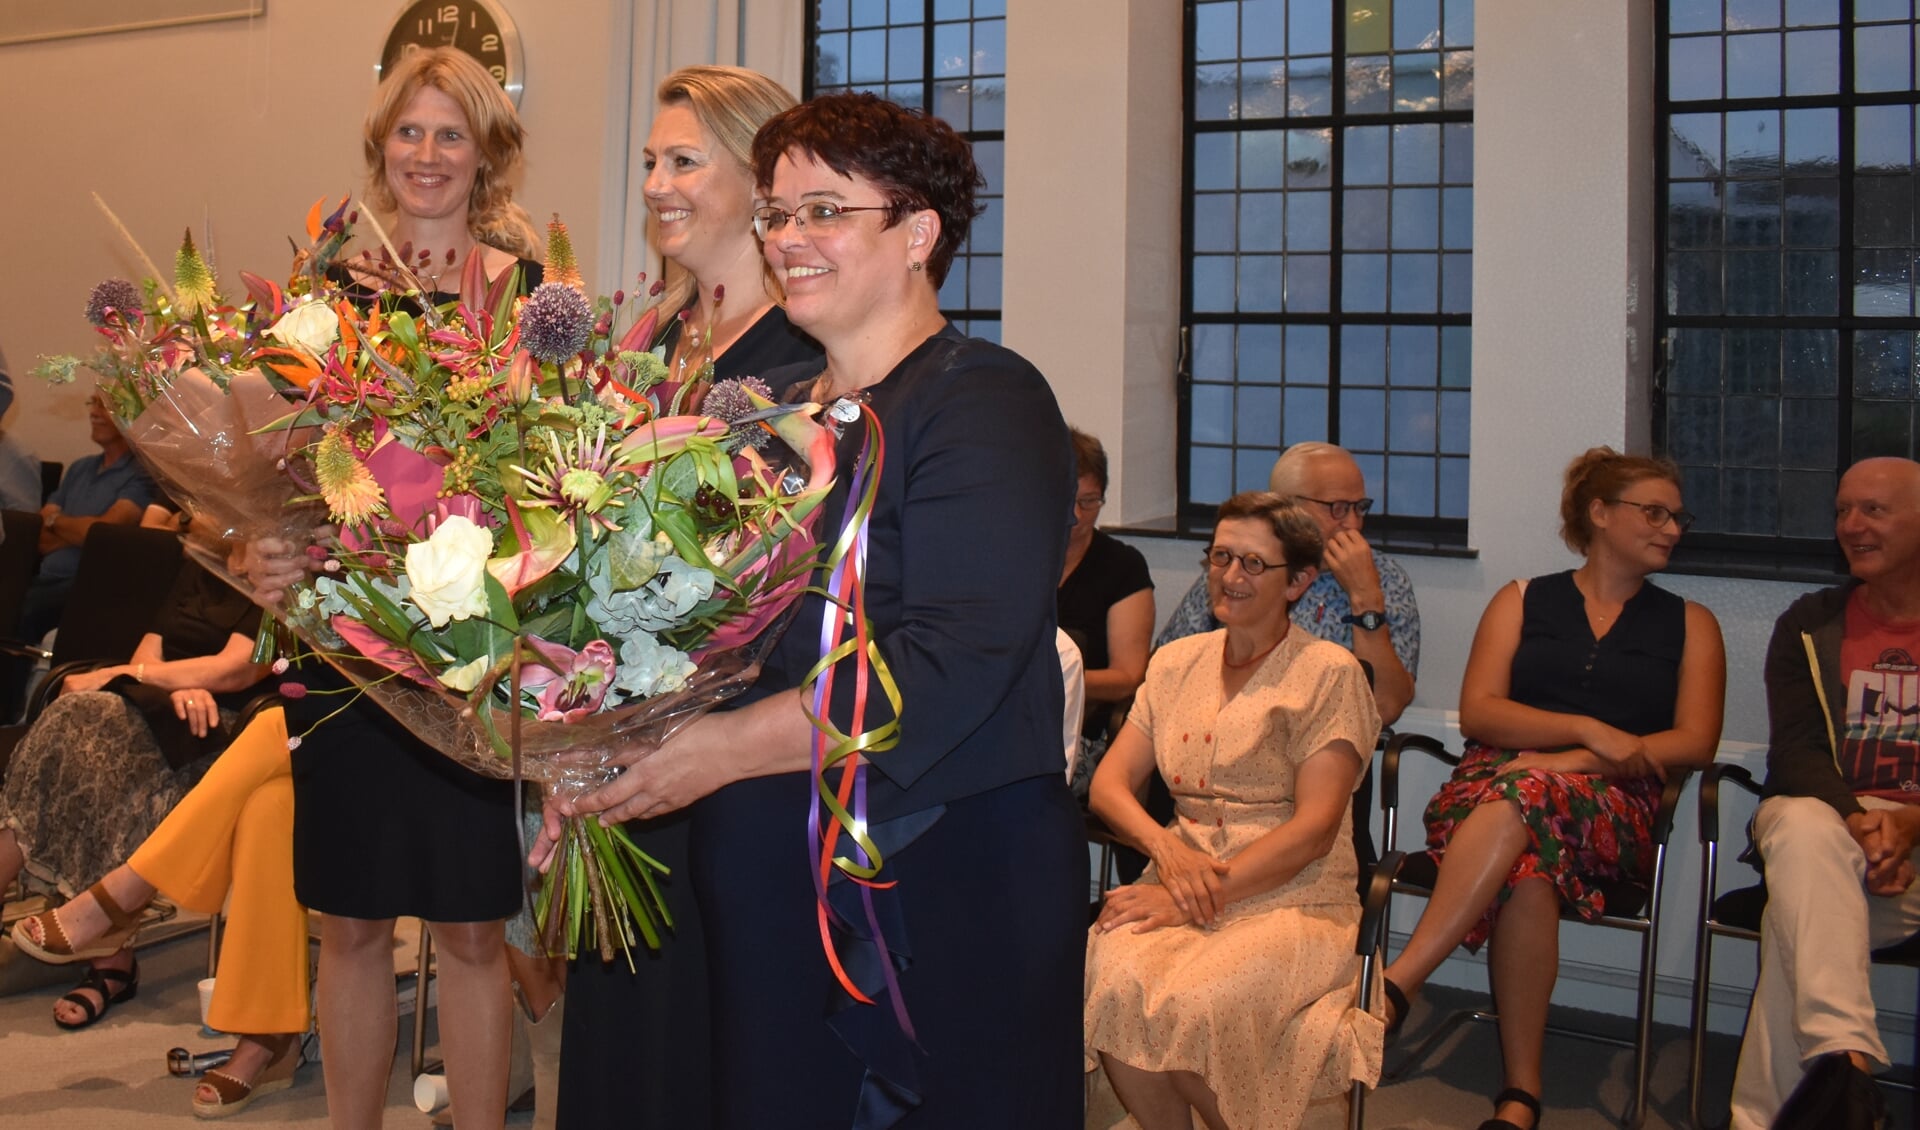 De drie beëdigde wethouders in de bloemen gezet. V.l.n.r.: Caroline de Pee (CDA), Berber van Zandbergen (GL/PvdA) en Tytsy Willemsma (FNP). Pal achter hen, in lichtgekleurde jurk, Corrie van der Linden (GL), die als nieuw raadslid werd geïnstalleerd.